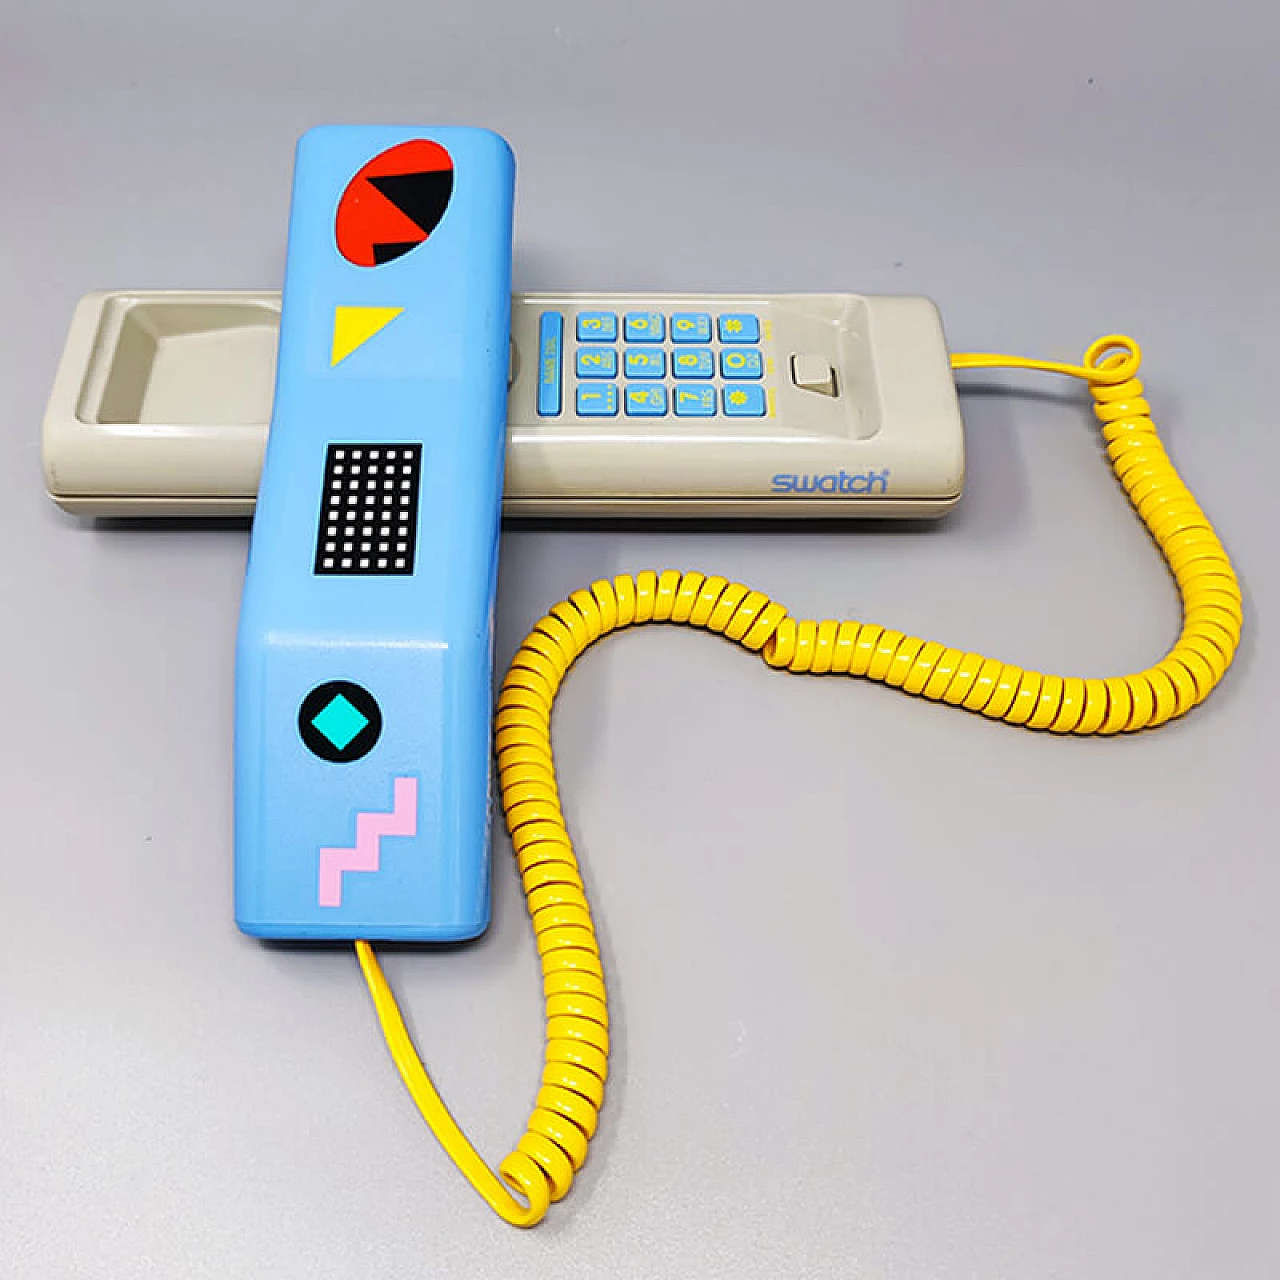 Swatch Twin Phone Deluxe landline, 1980s 4